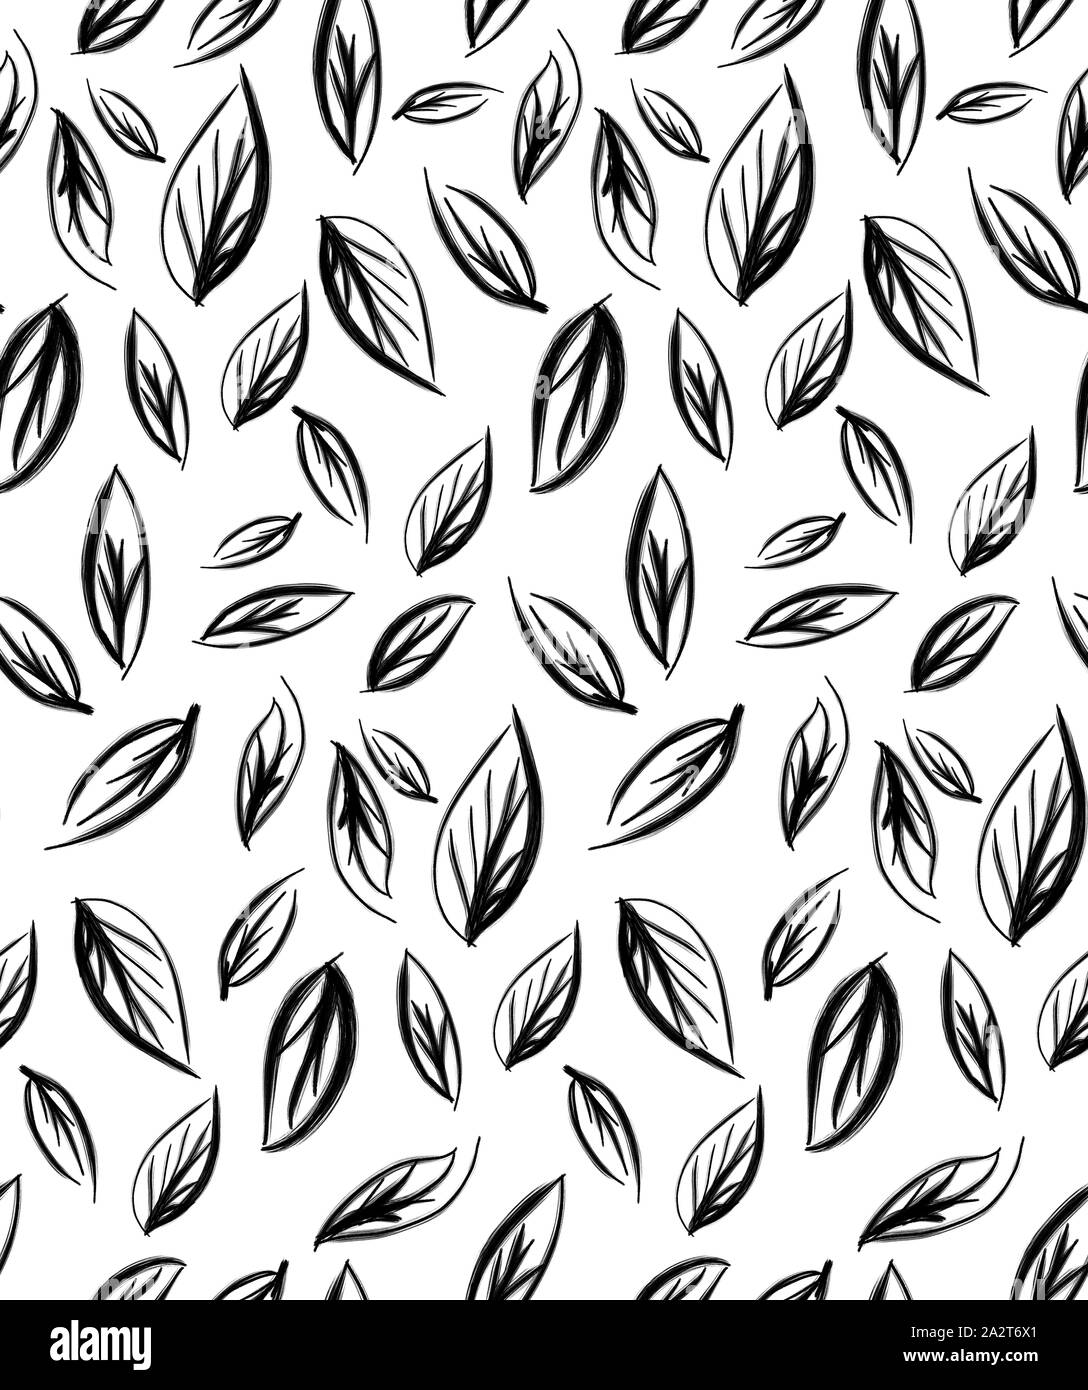 Abstract pattern senza giunture di caduta foglie di autunno. Disegnata a mano foglie con sfondo bianco. Progettazione per la carta, tessuto, tessuto stampe. Foto Stock